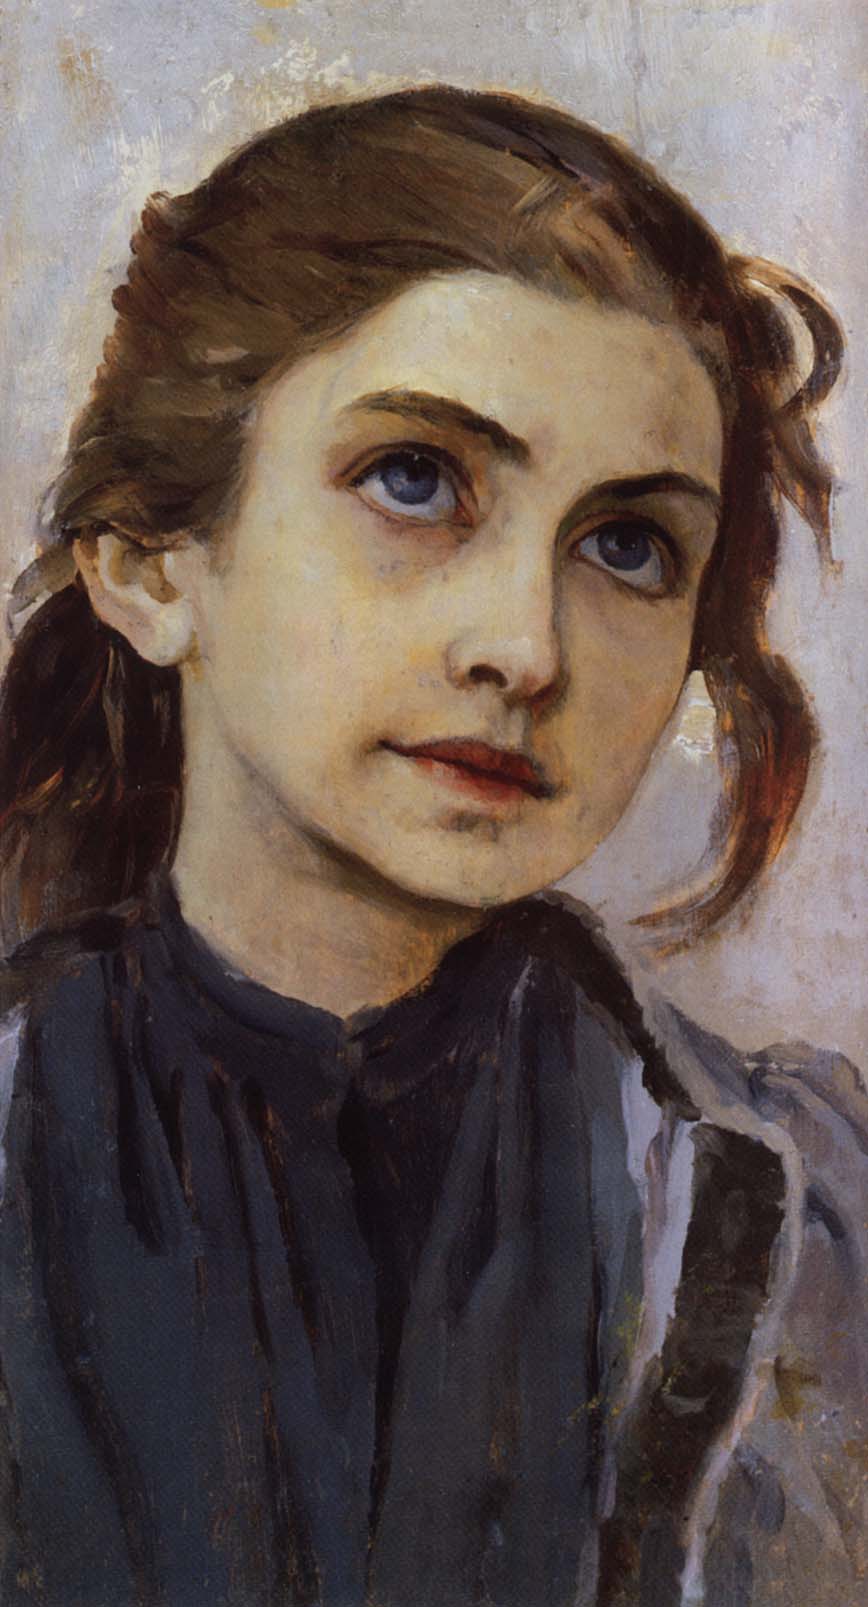 Нестеров М.. Девочка. 1890-1891